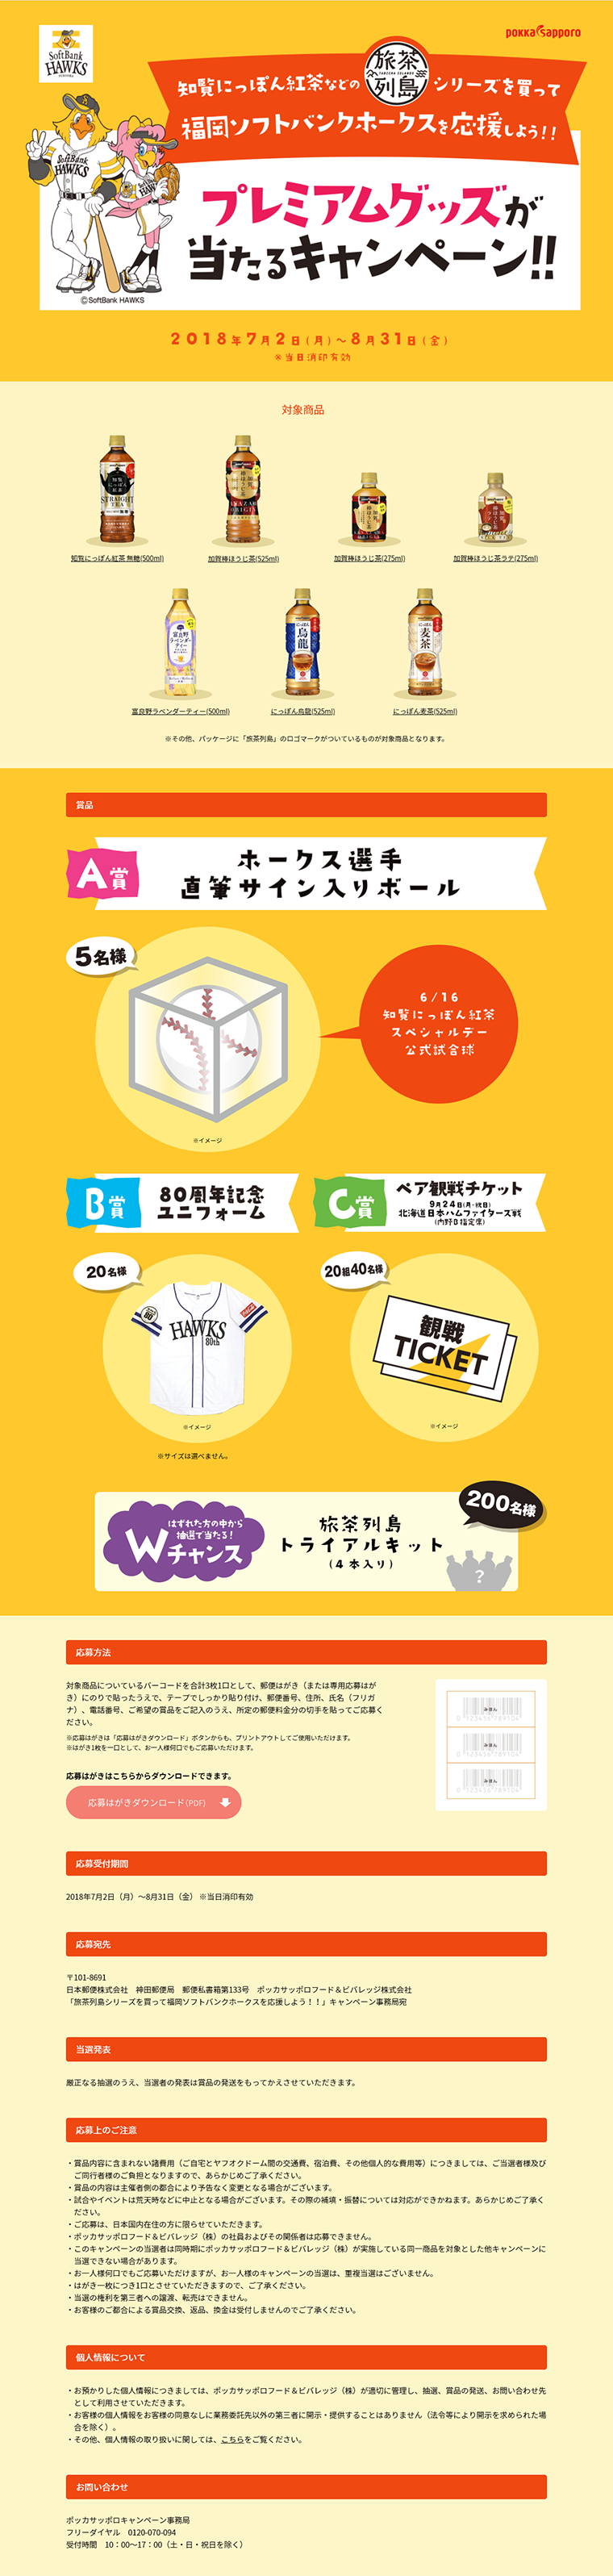 旅茶列島シリーズを買って福岡ソフトバンクホークスを応援しよう!!キャンペーン_pc_1